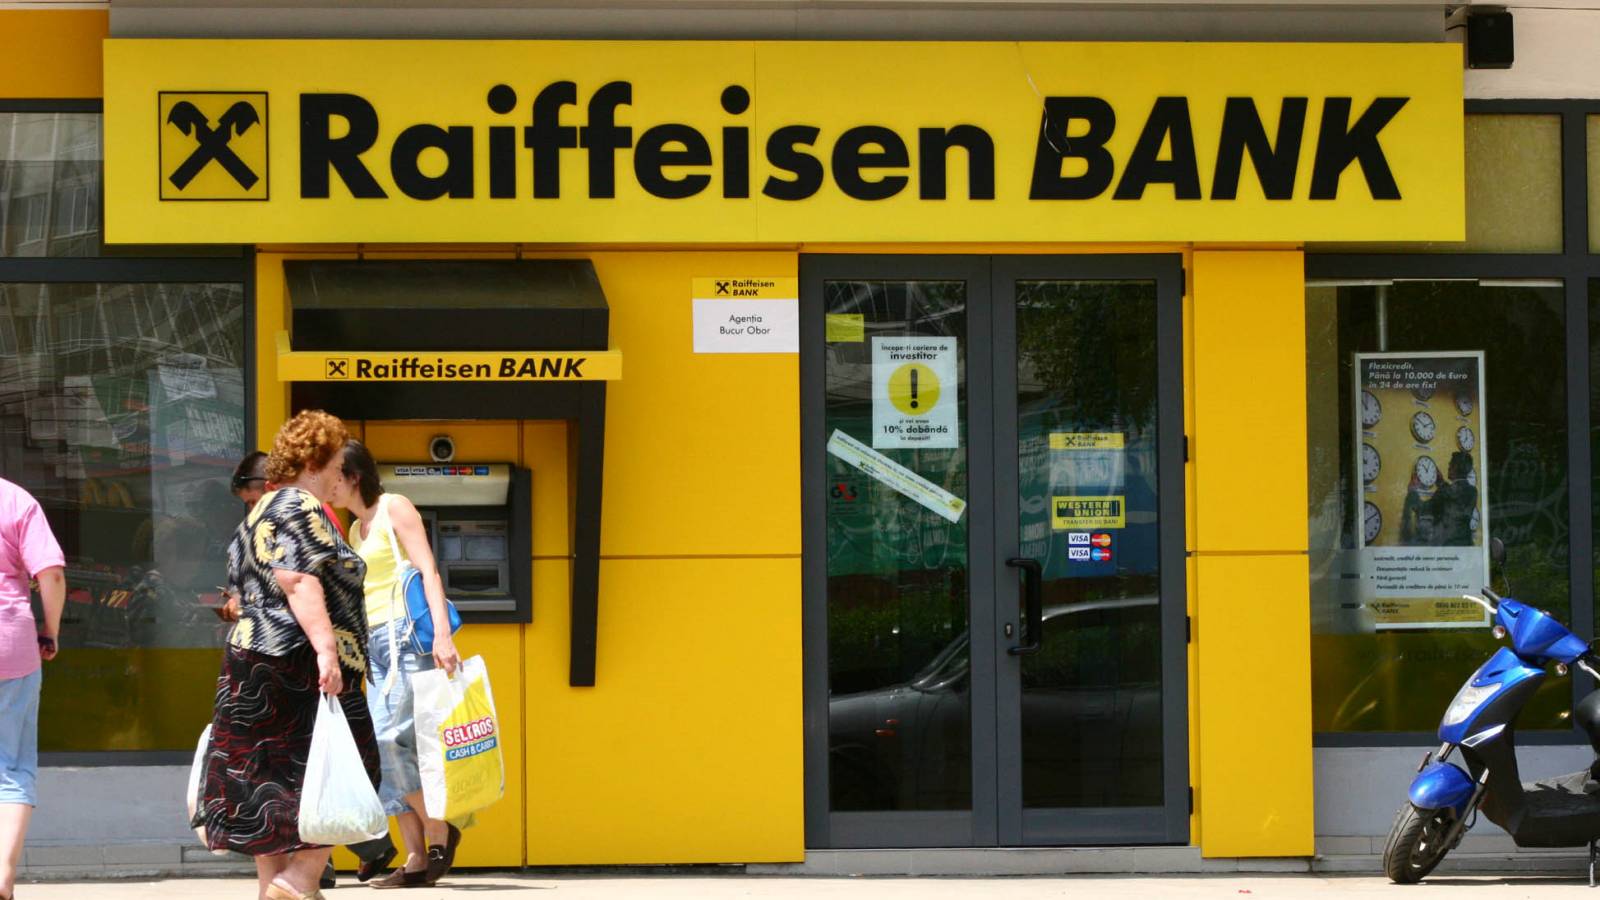 Raiffeisen Bank clasic